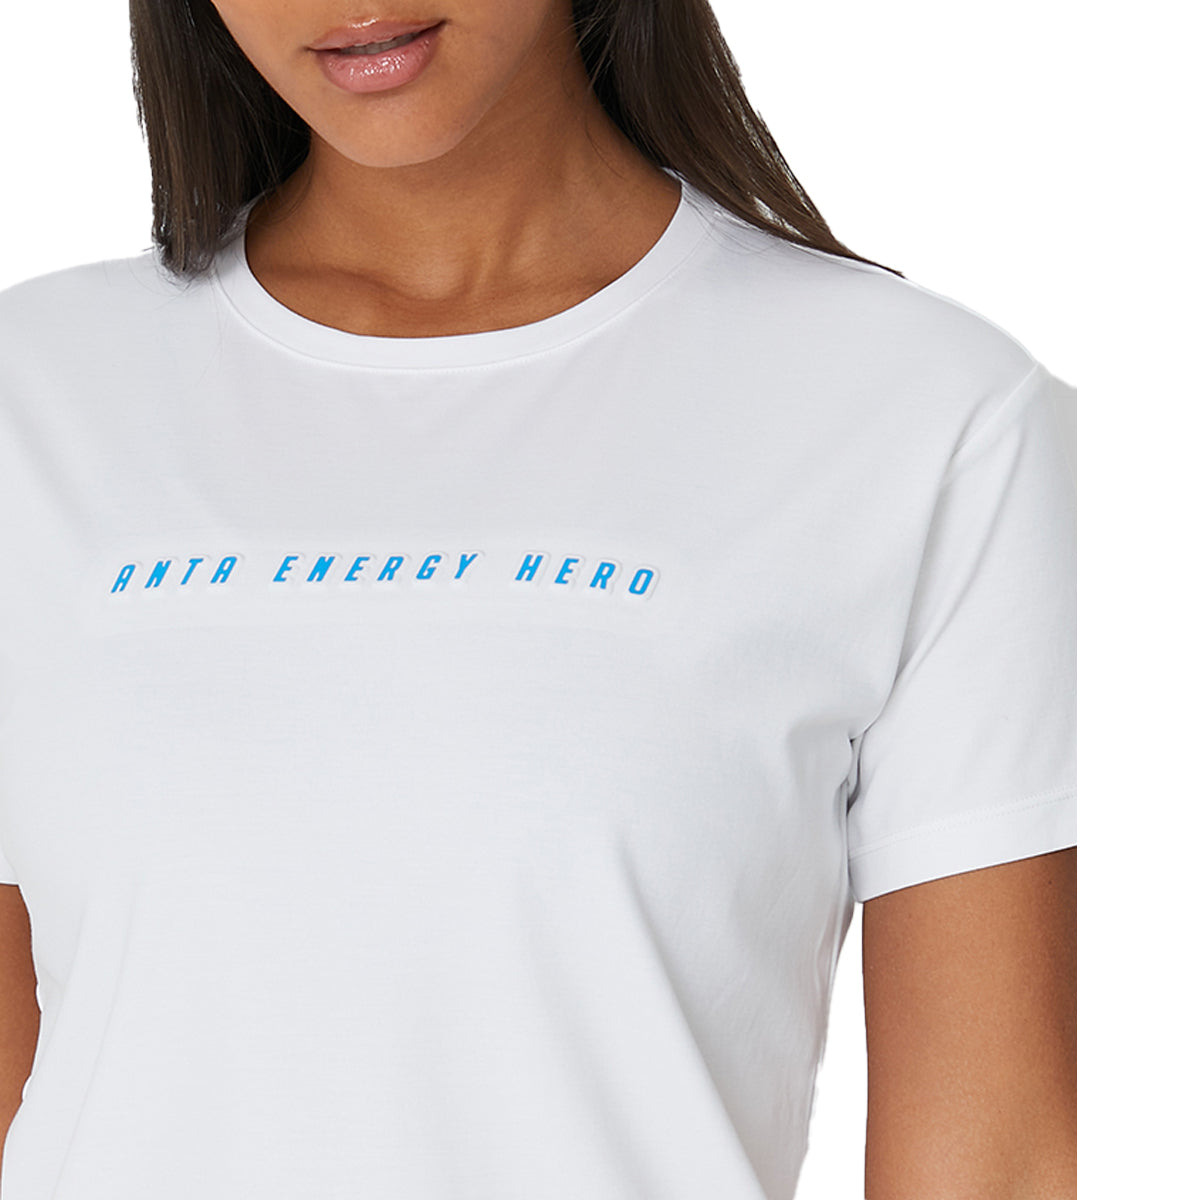 Anta SS Tee Cotton T-Shirt For Women, White